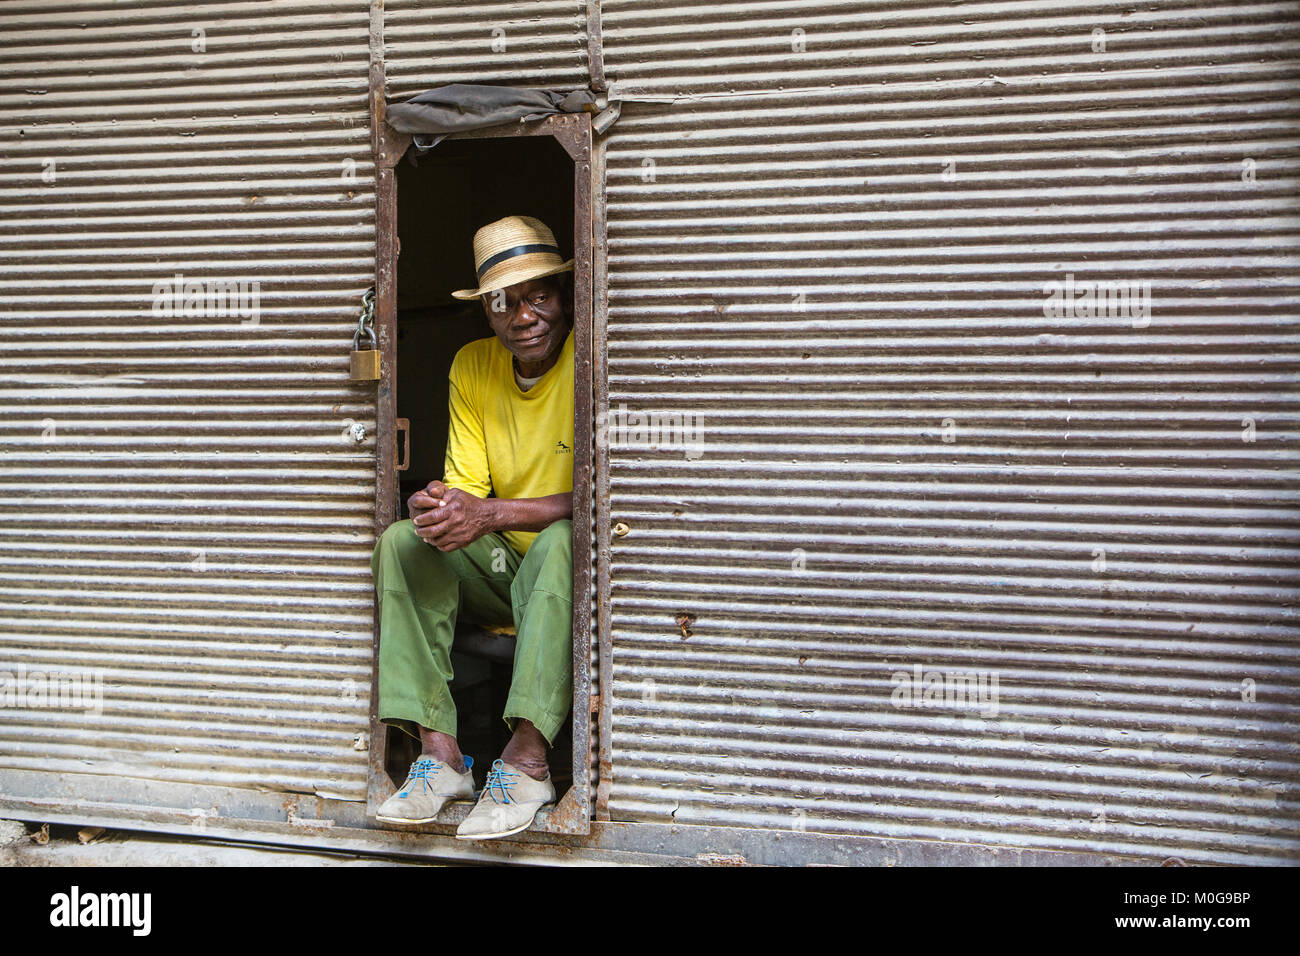 Poor man passing time in Havana, Cuba Stock Photo